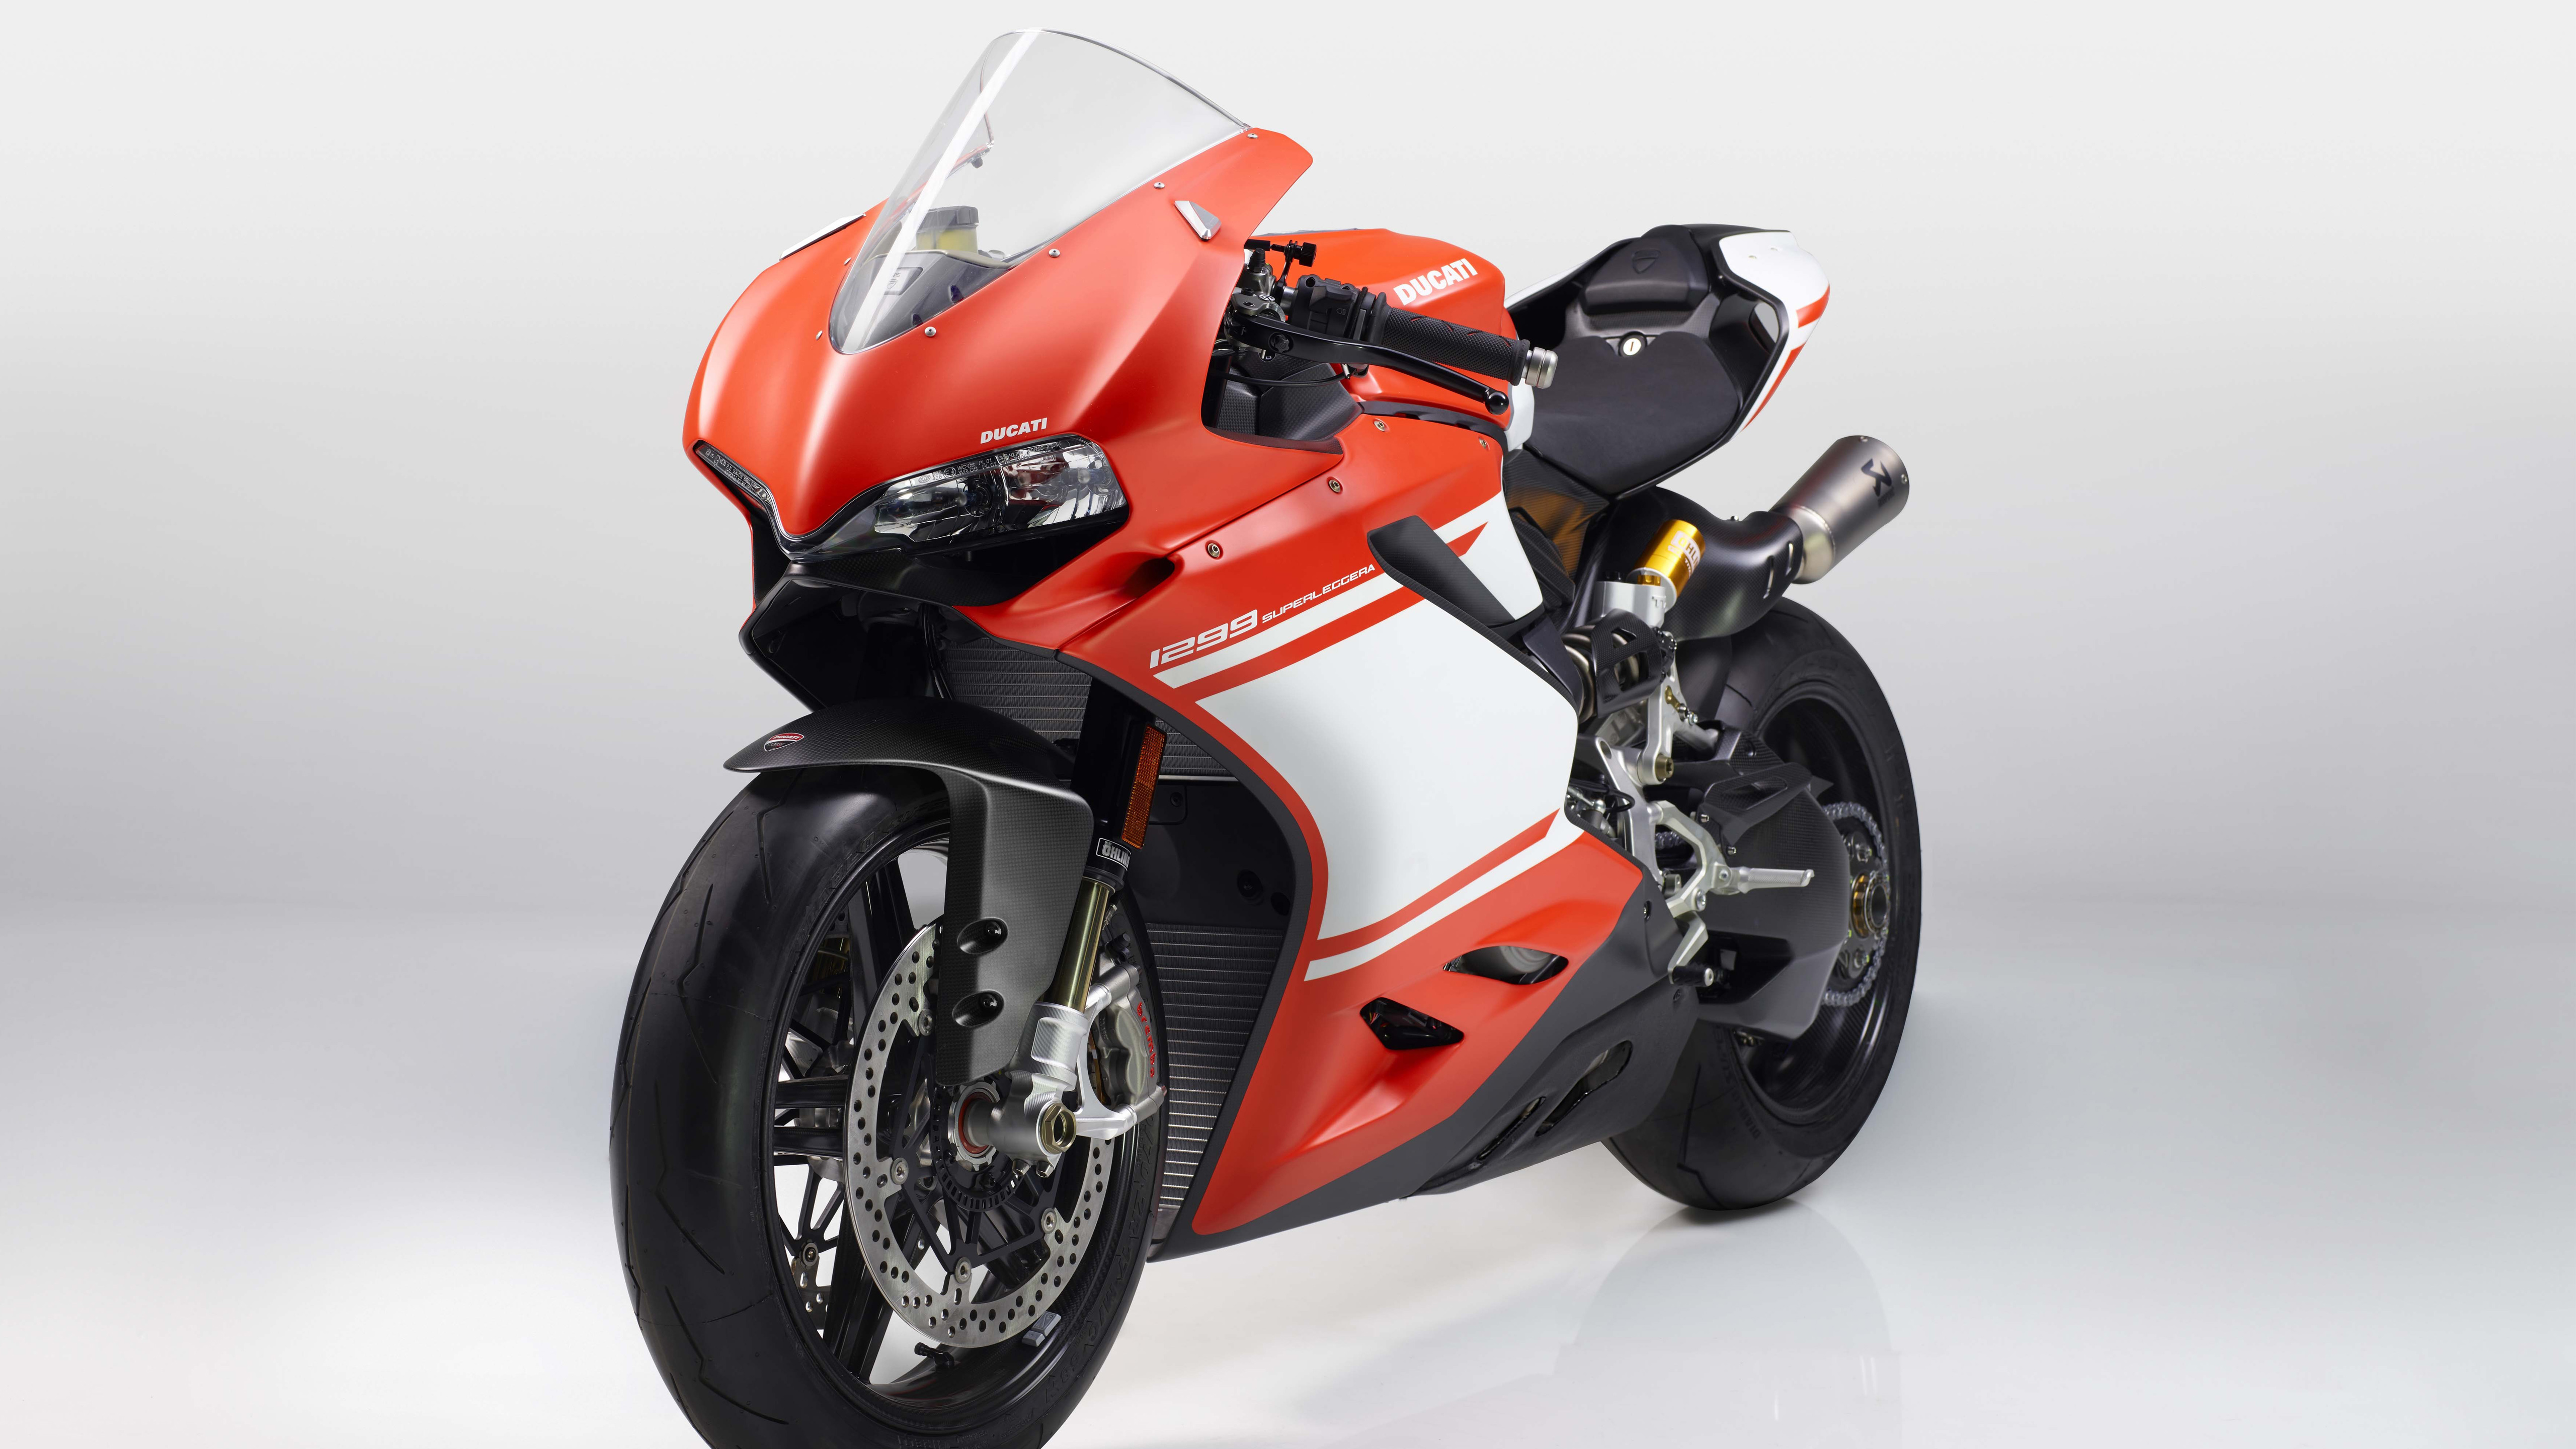 2017 Ducati 1299 Superleggera 5K7823111660 - 2017 Ducati 1299 Superleggera 5K - Superleggera, Ducati, 2017, 1299